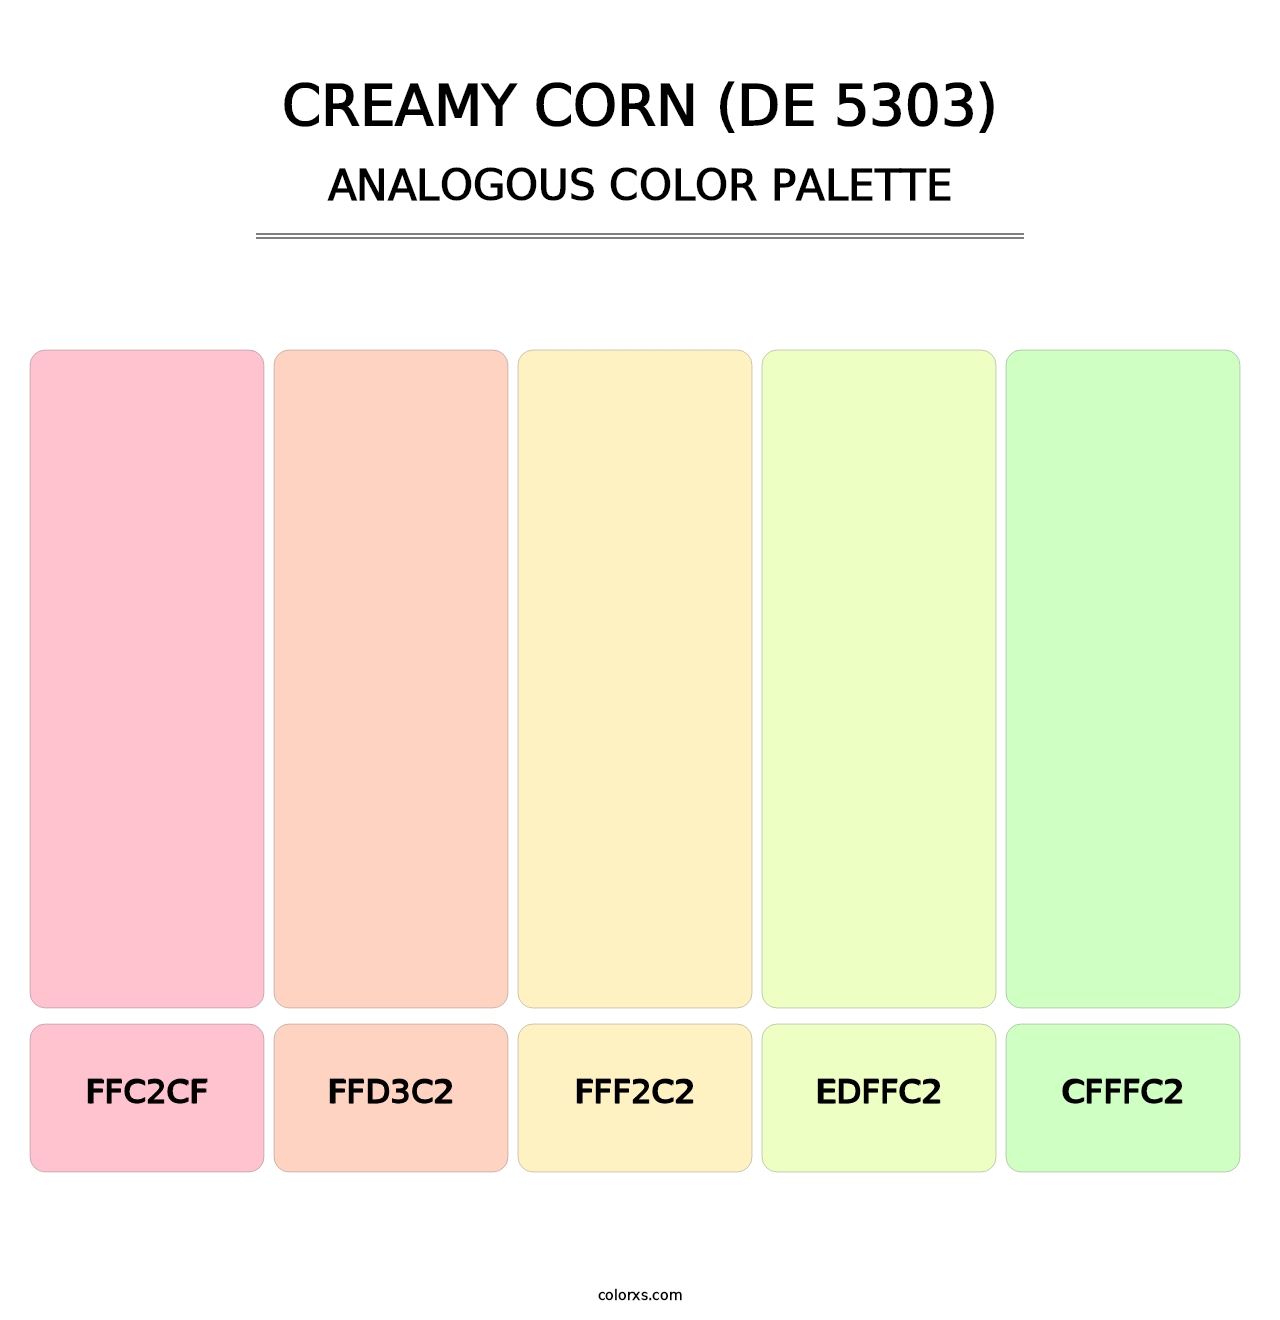 Creamy Corn (DE 5303) - Analogous Color Palette